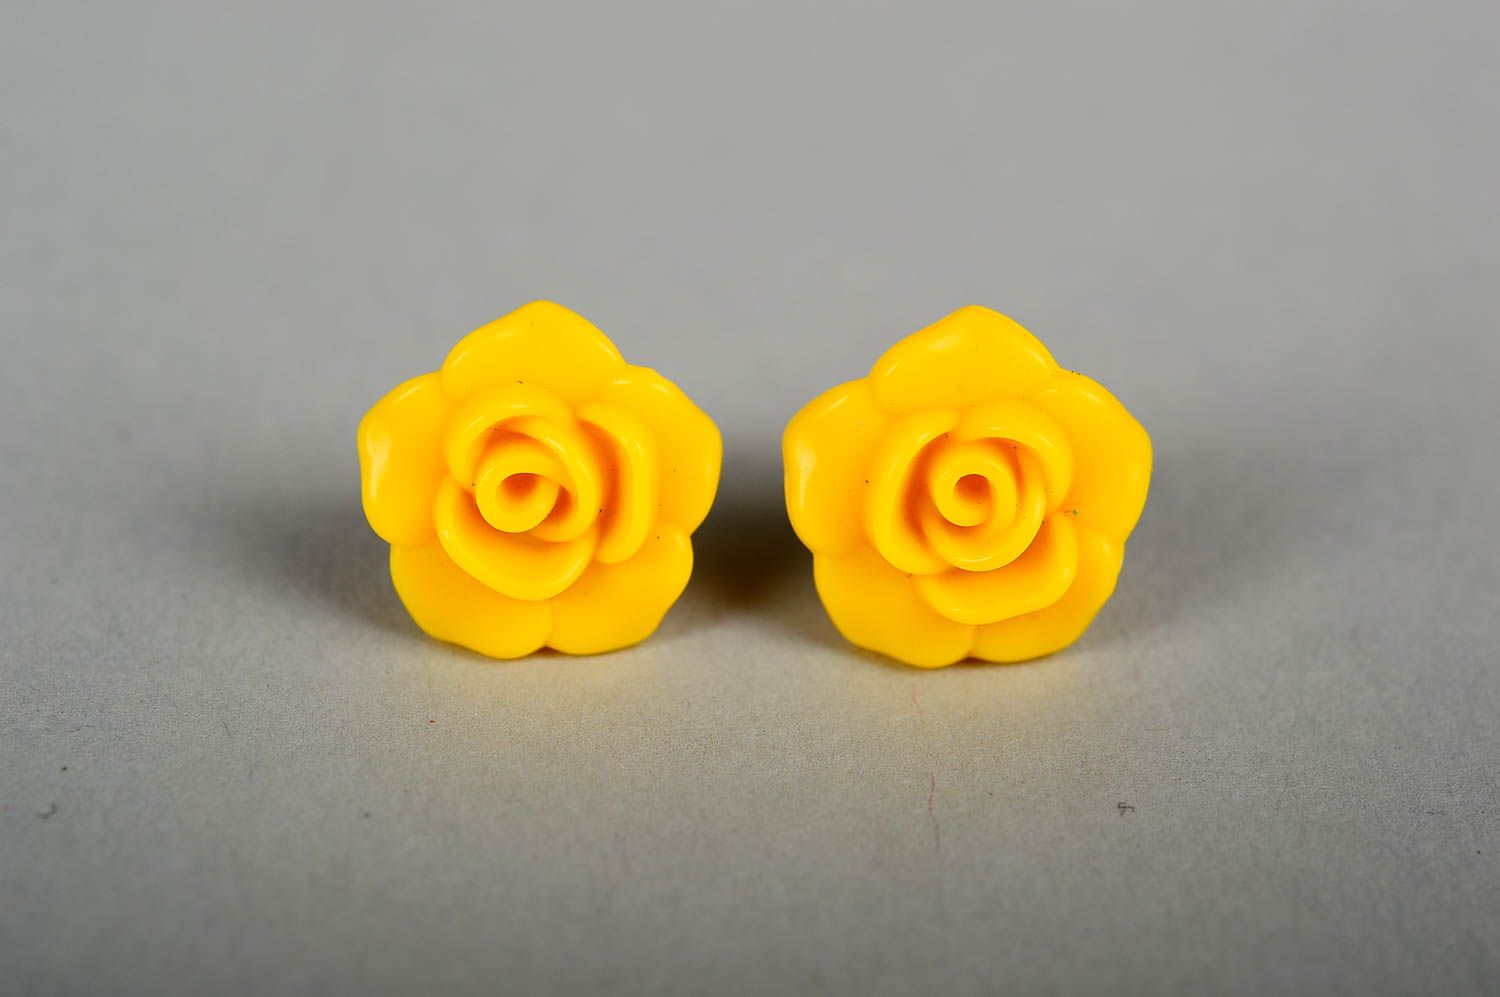 Красивые серьги хэнд мэйд желтые серьги гвоздики украшение из пластика фото 1